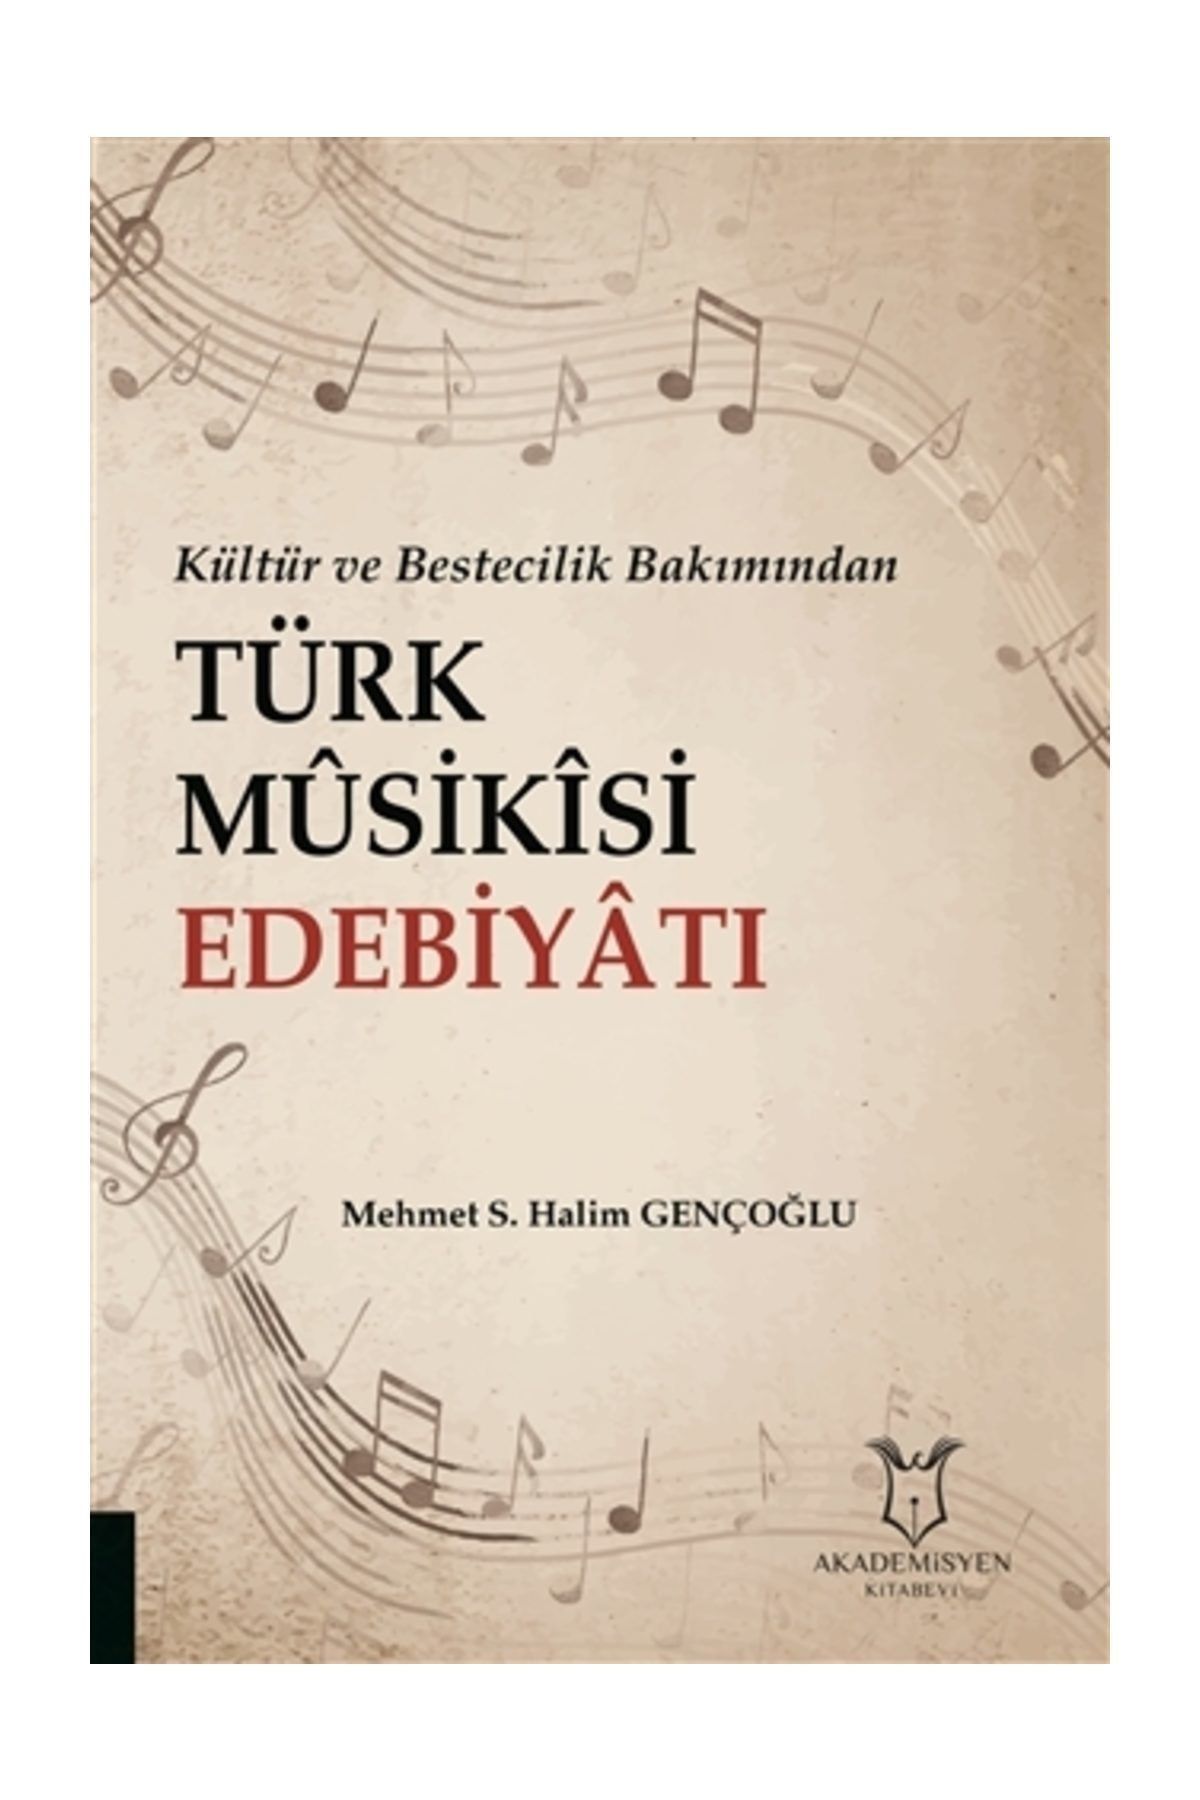 Akademisyen Kitabevi Kültür ve Bestecilik Bakımından Türk Musikisi Edebiyatı - Mehmet S. Halim Gençoğlu